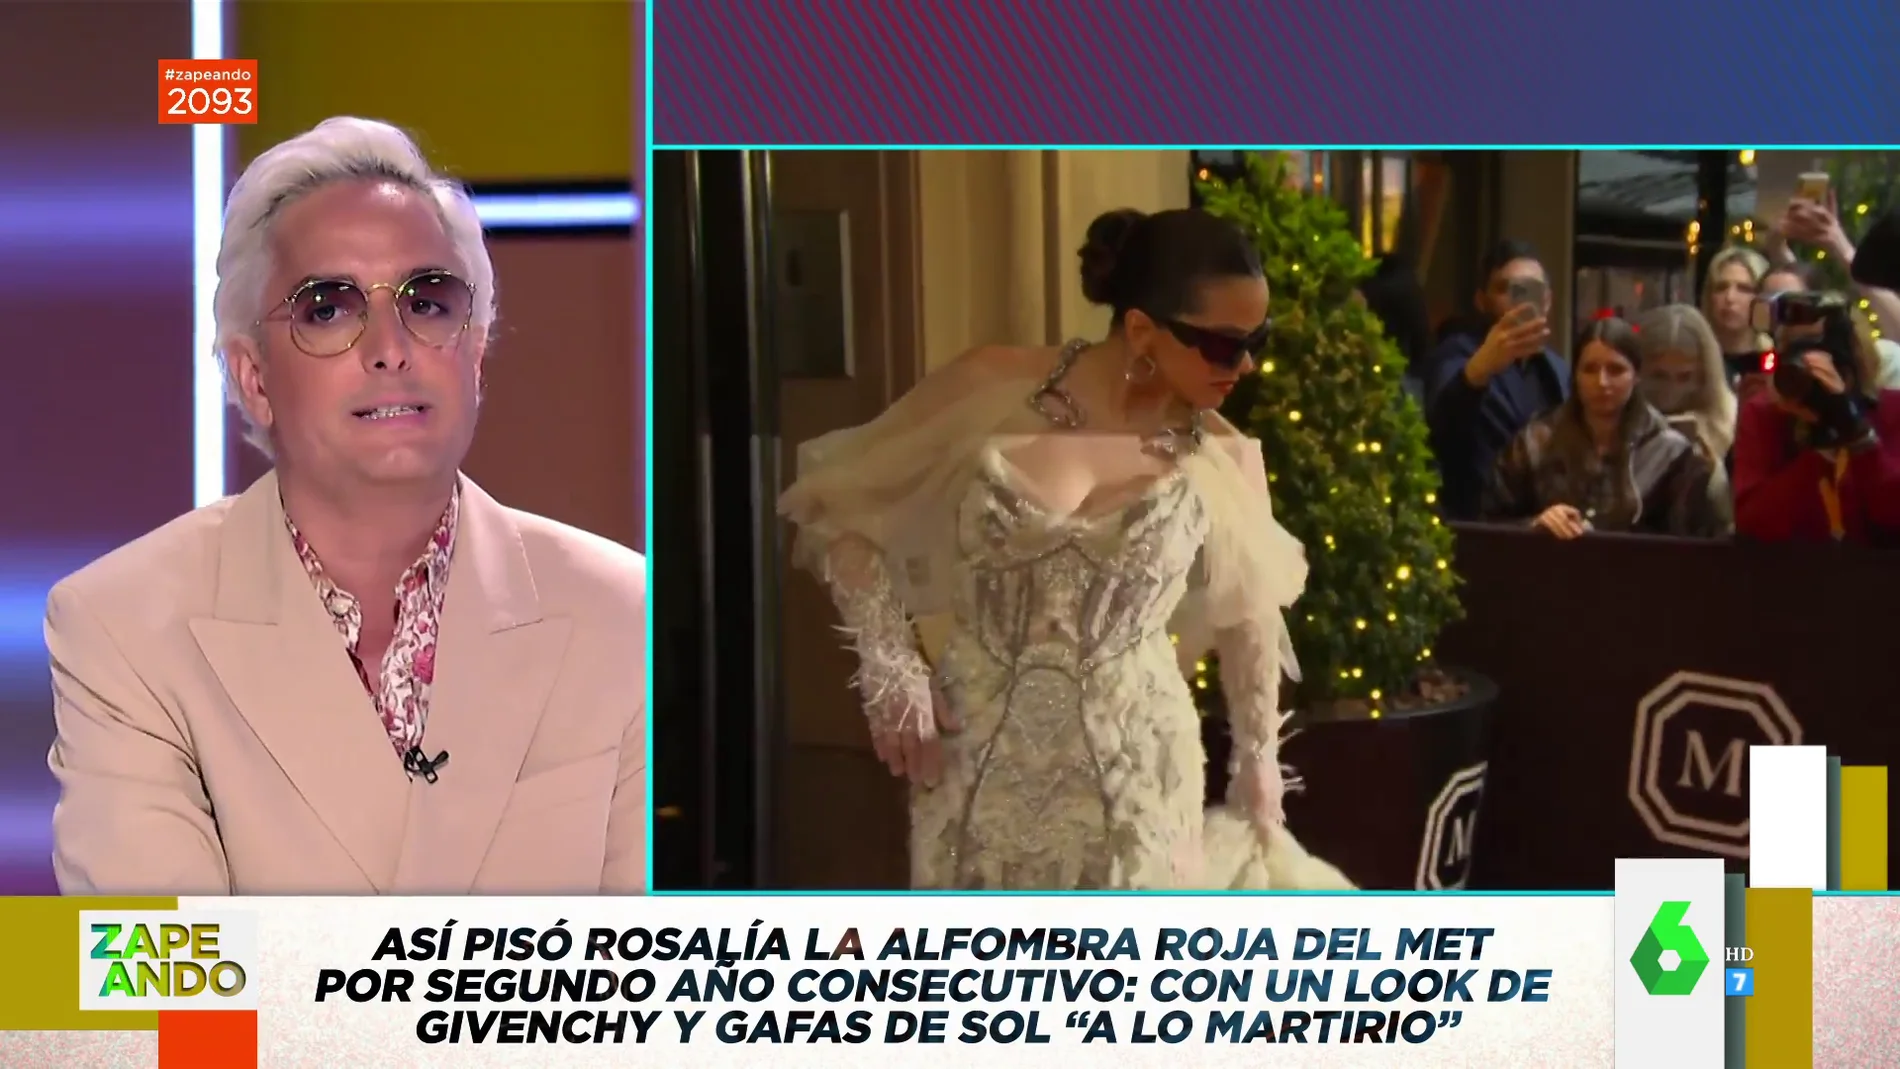 Josie y Cristina Pedroche celebran el espectacular look y el "poderío" de Rosalía en la Gala Met: "Es una reina"